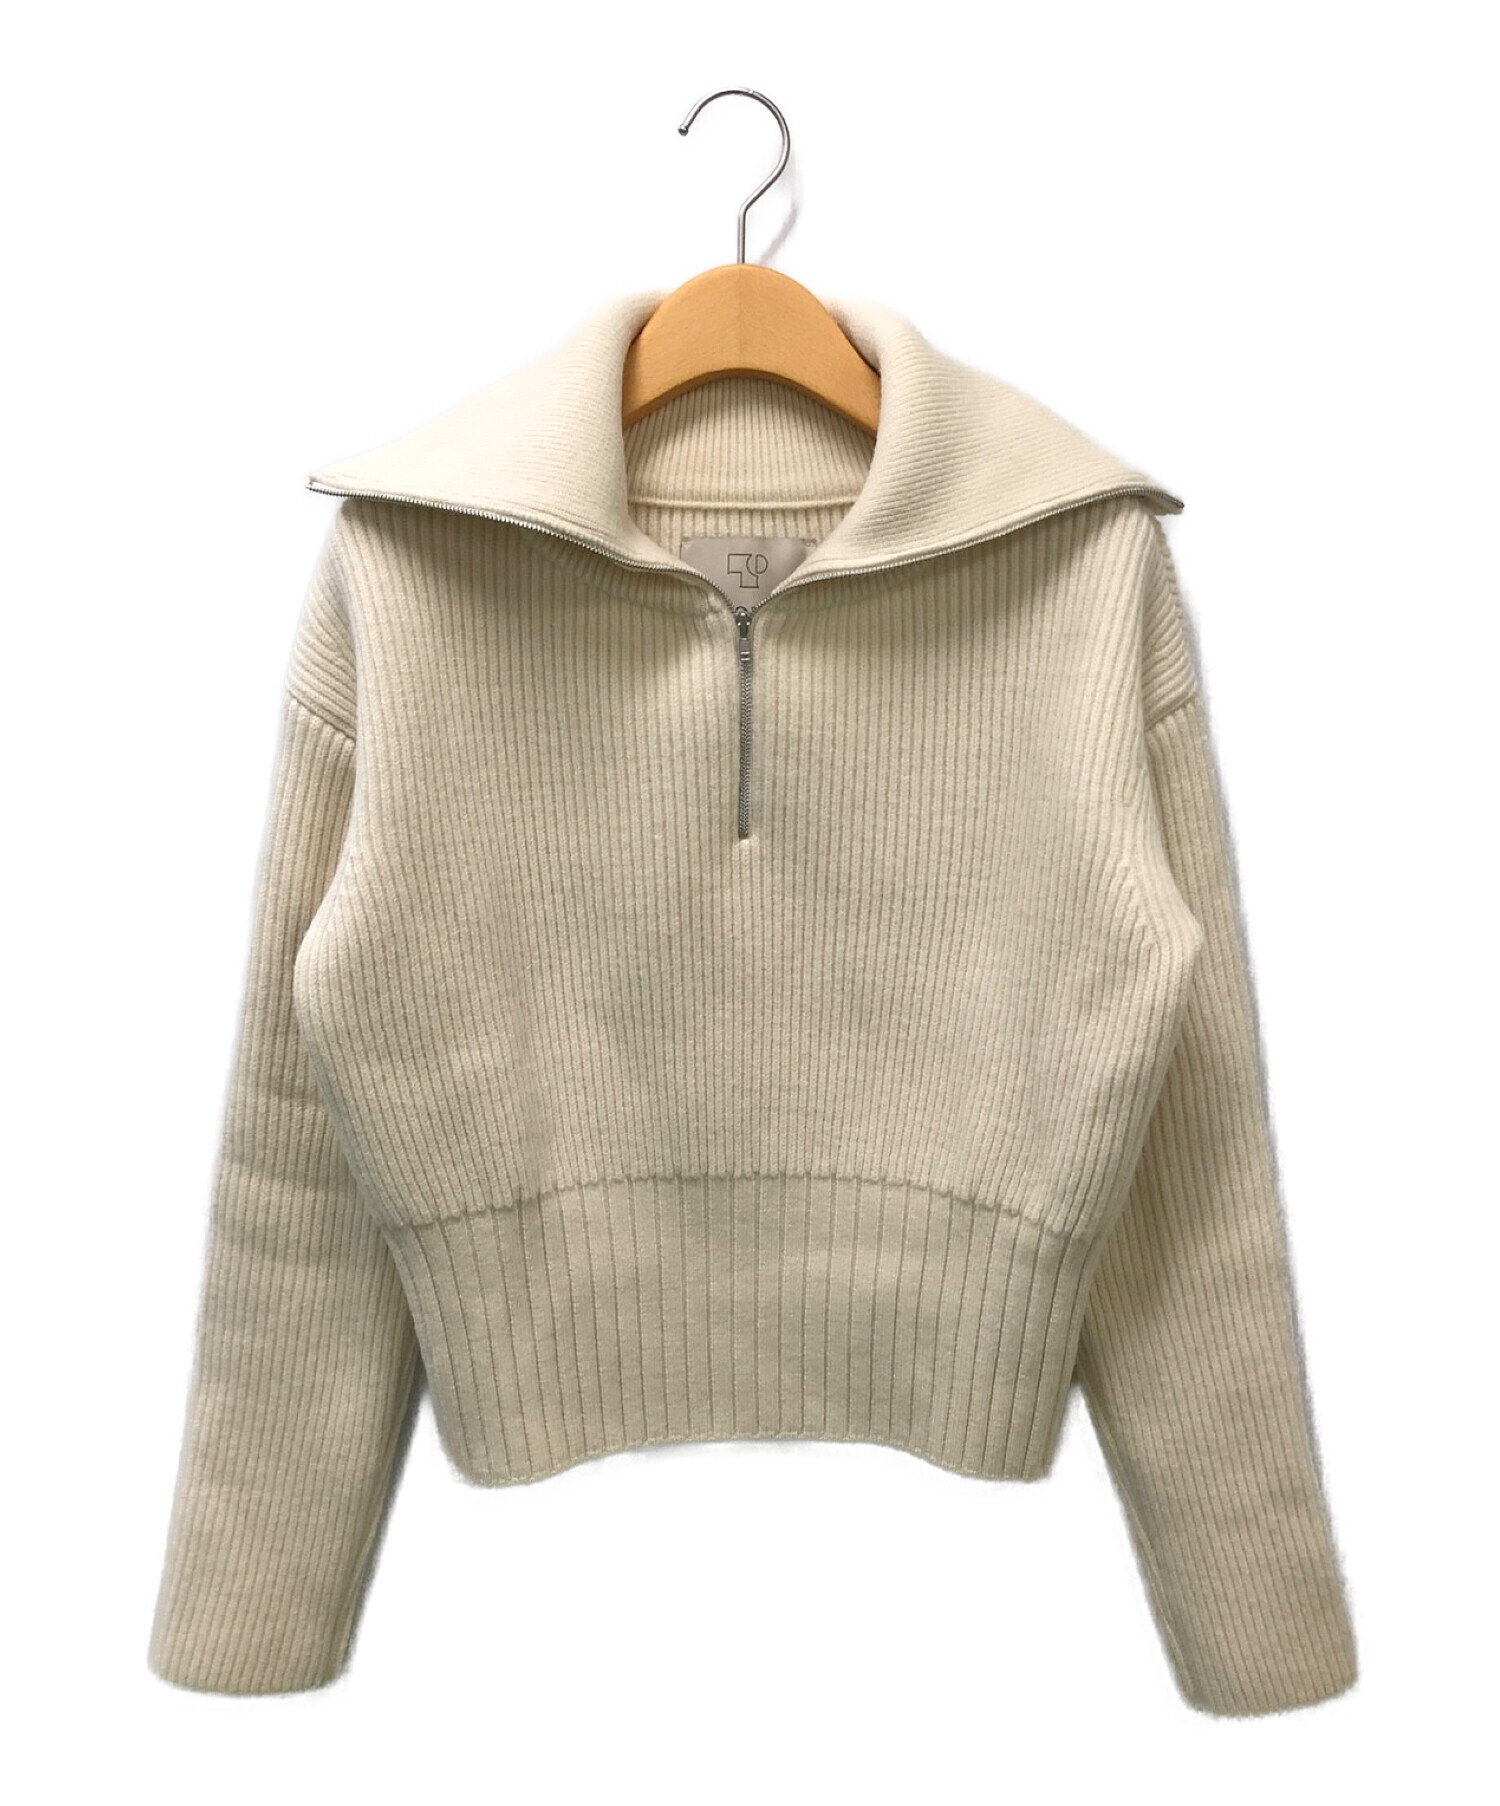 teloplan / ito coller sweater